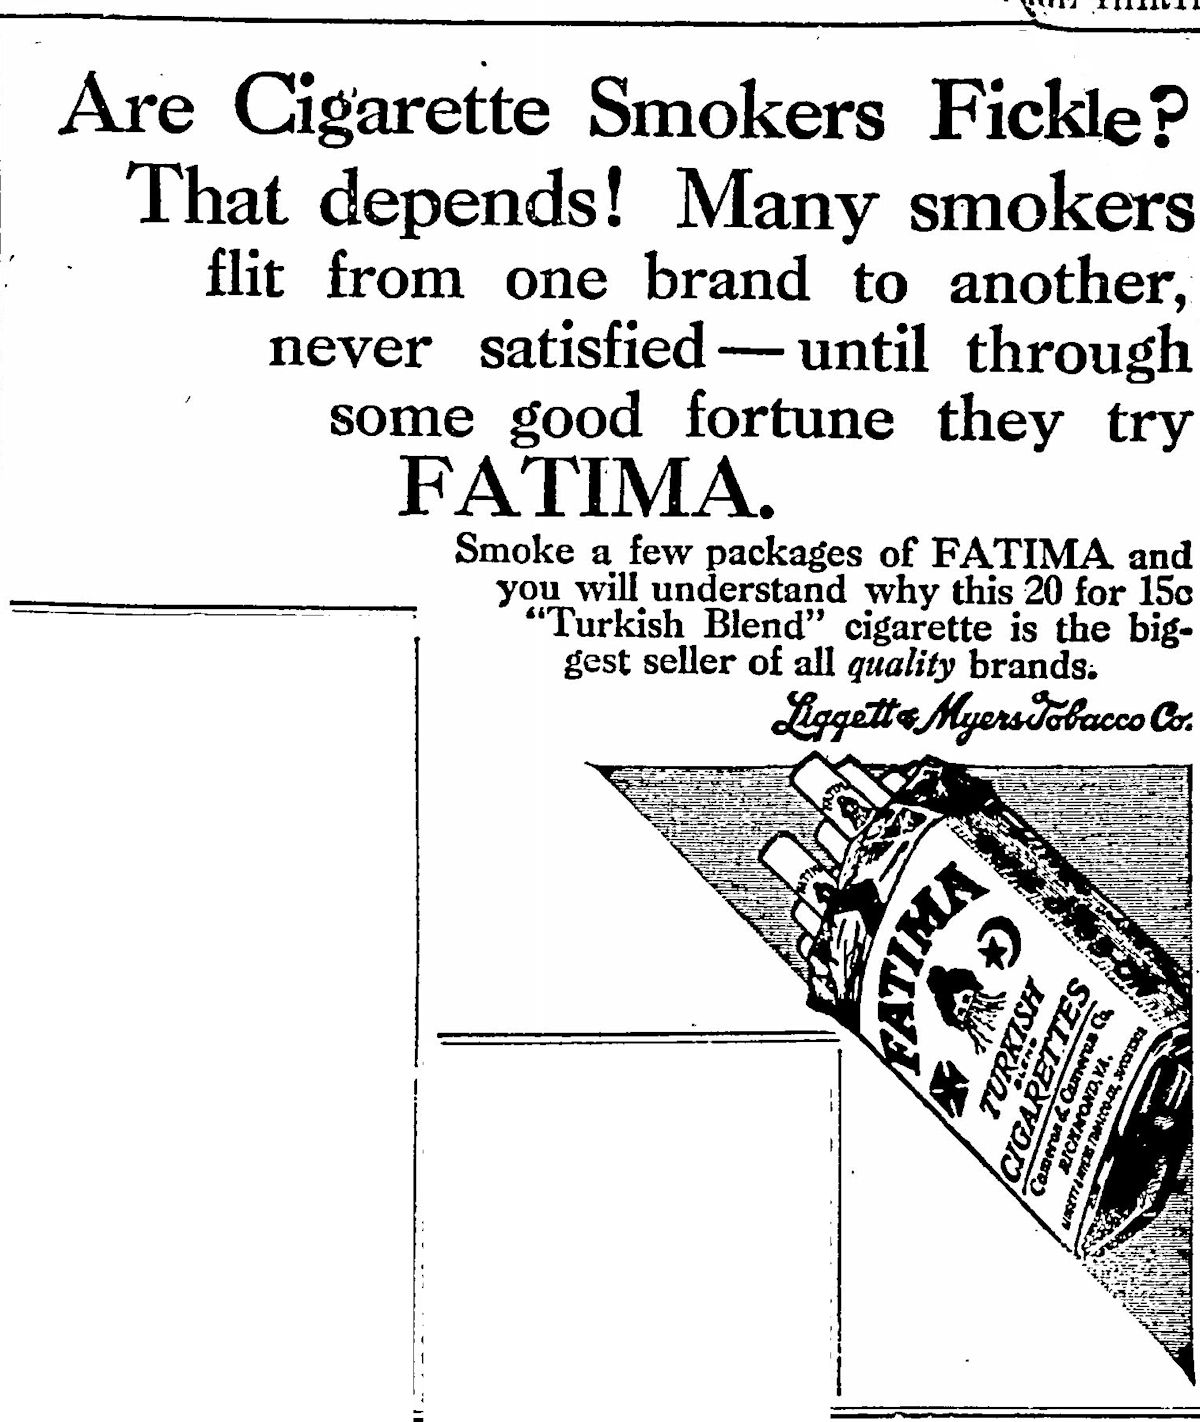 1914 fatima